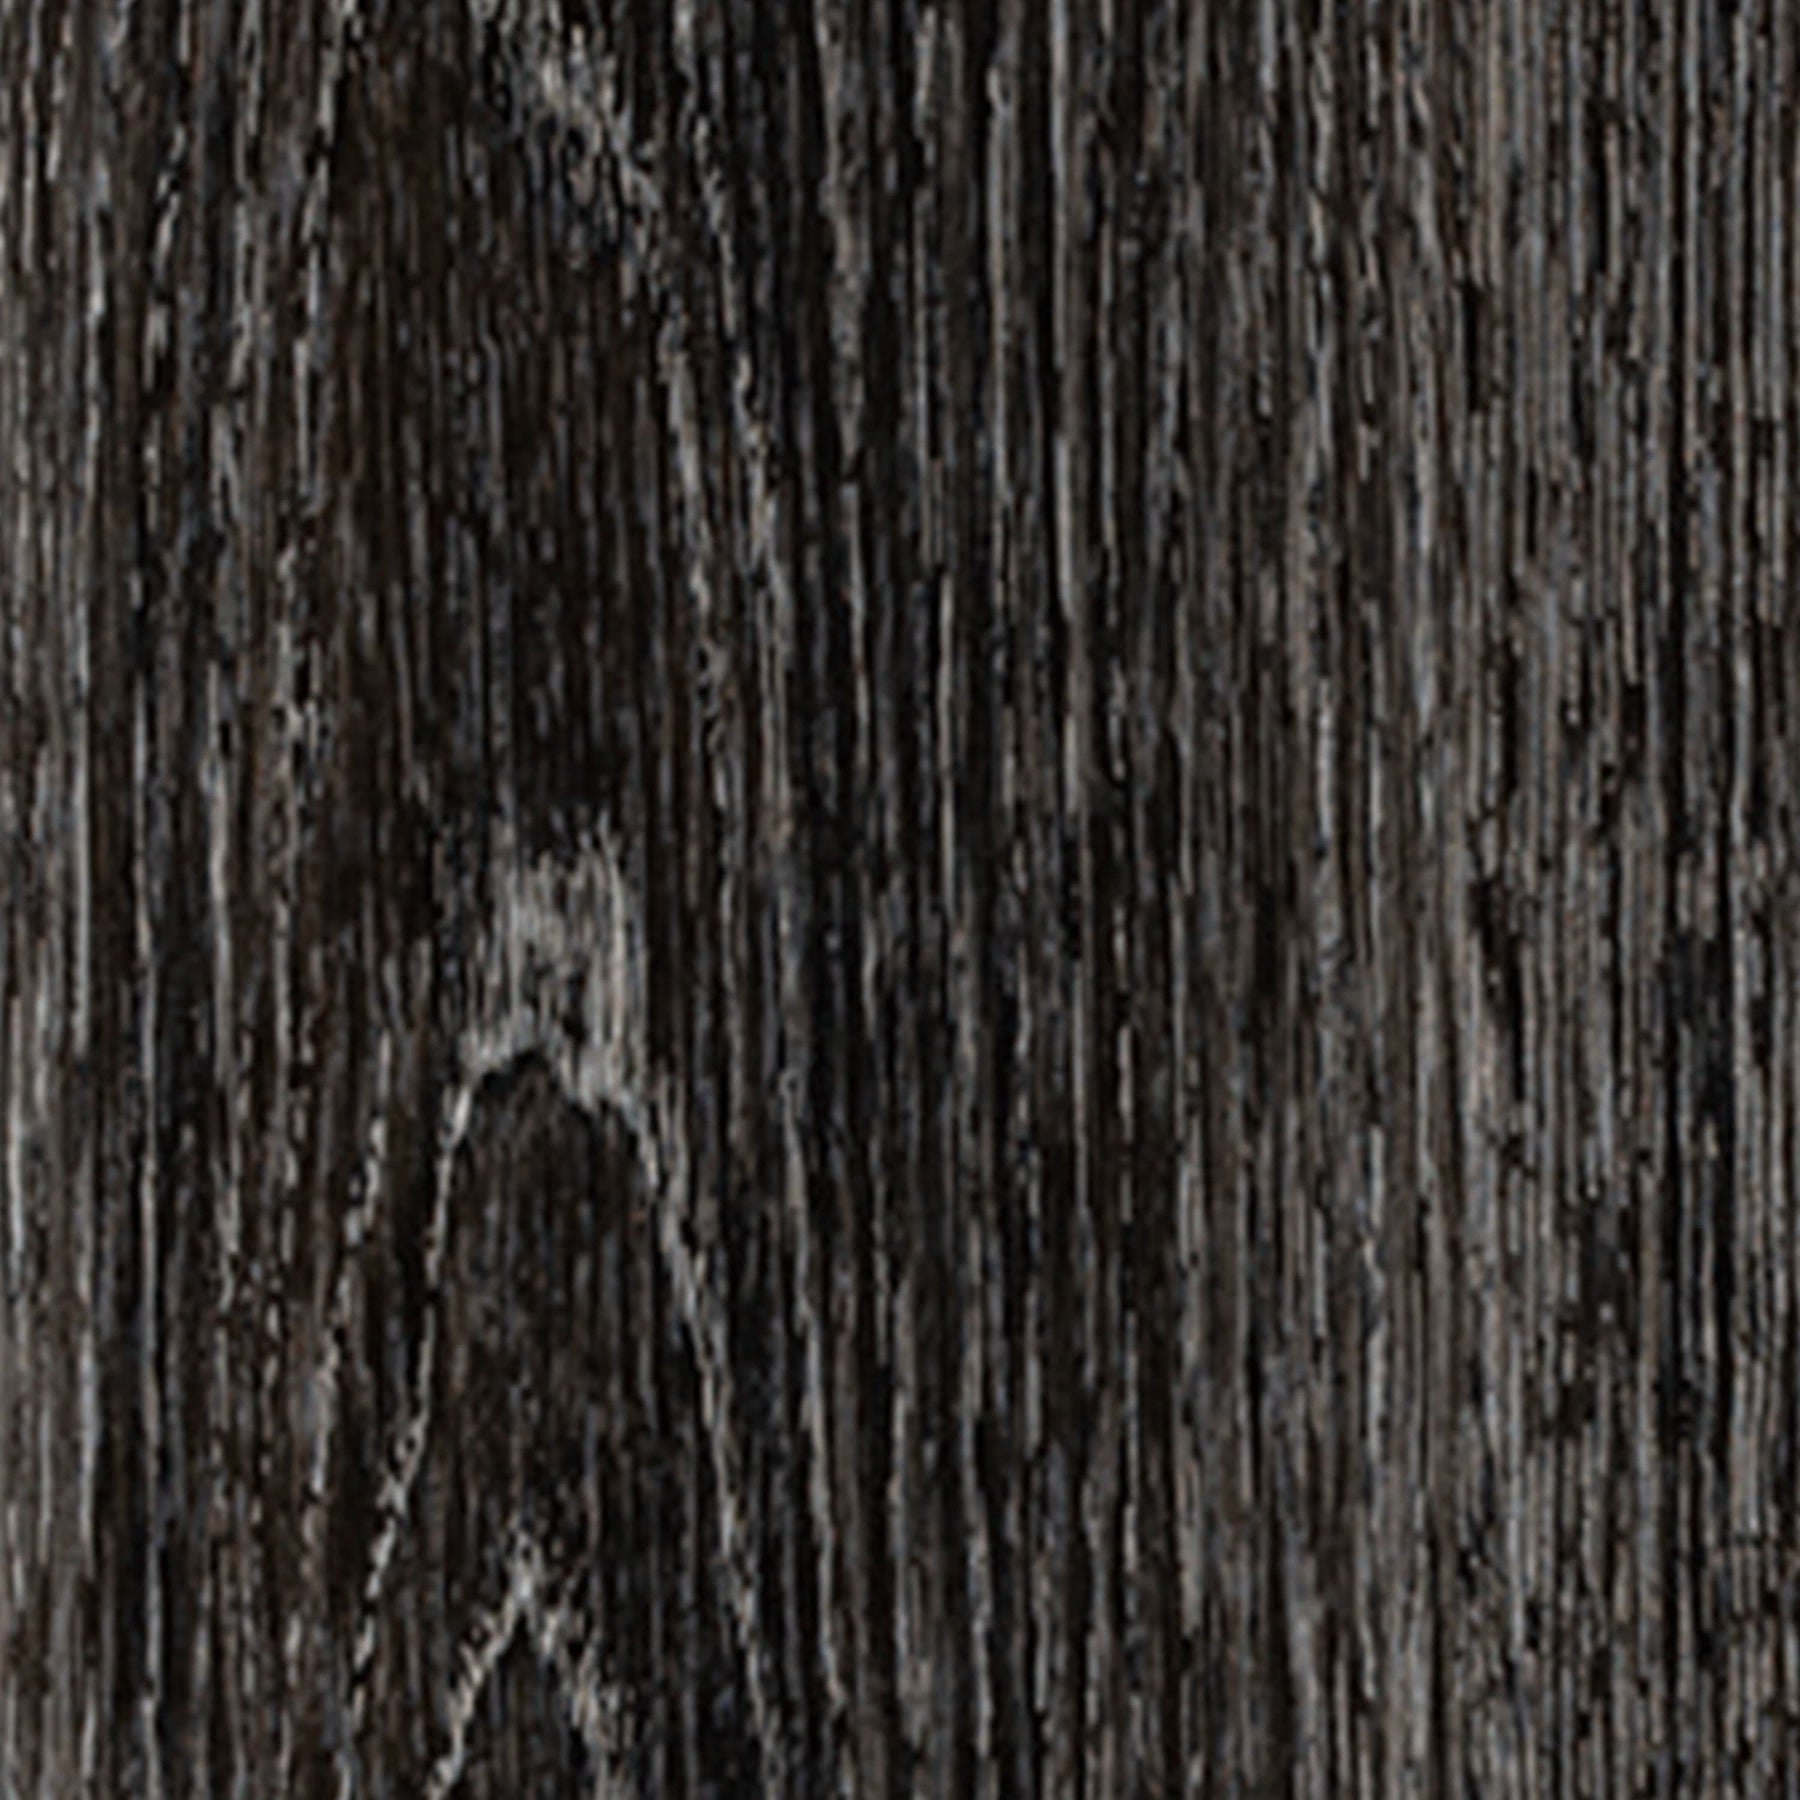 アヴァンセラフロア ビノシュオークの画像です